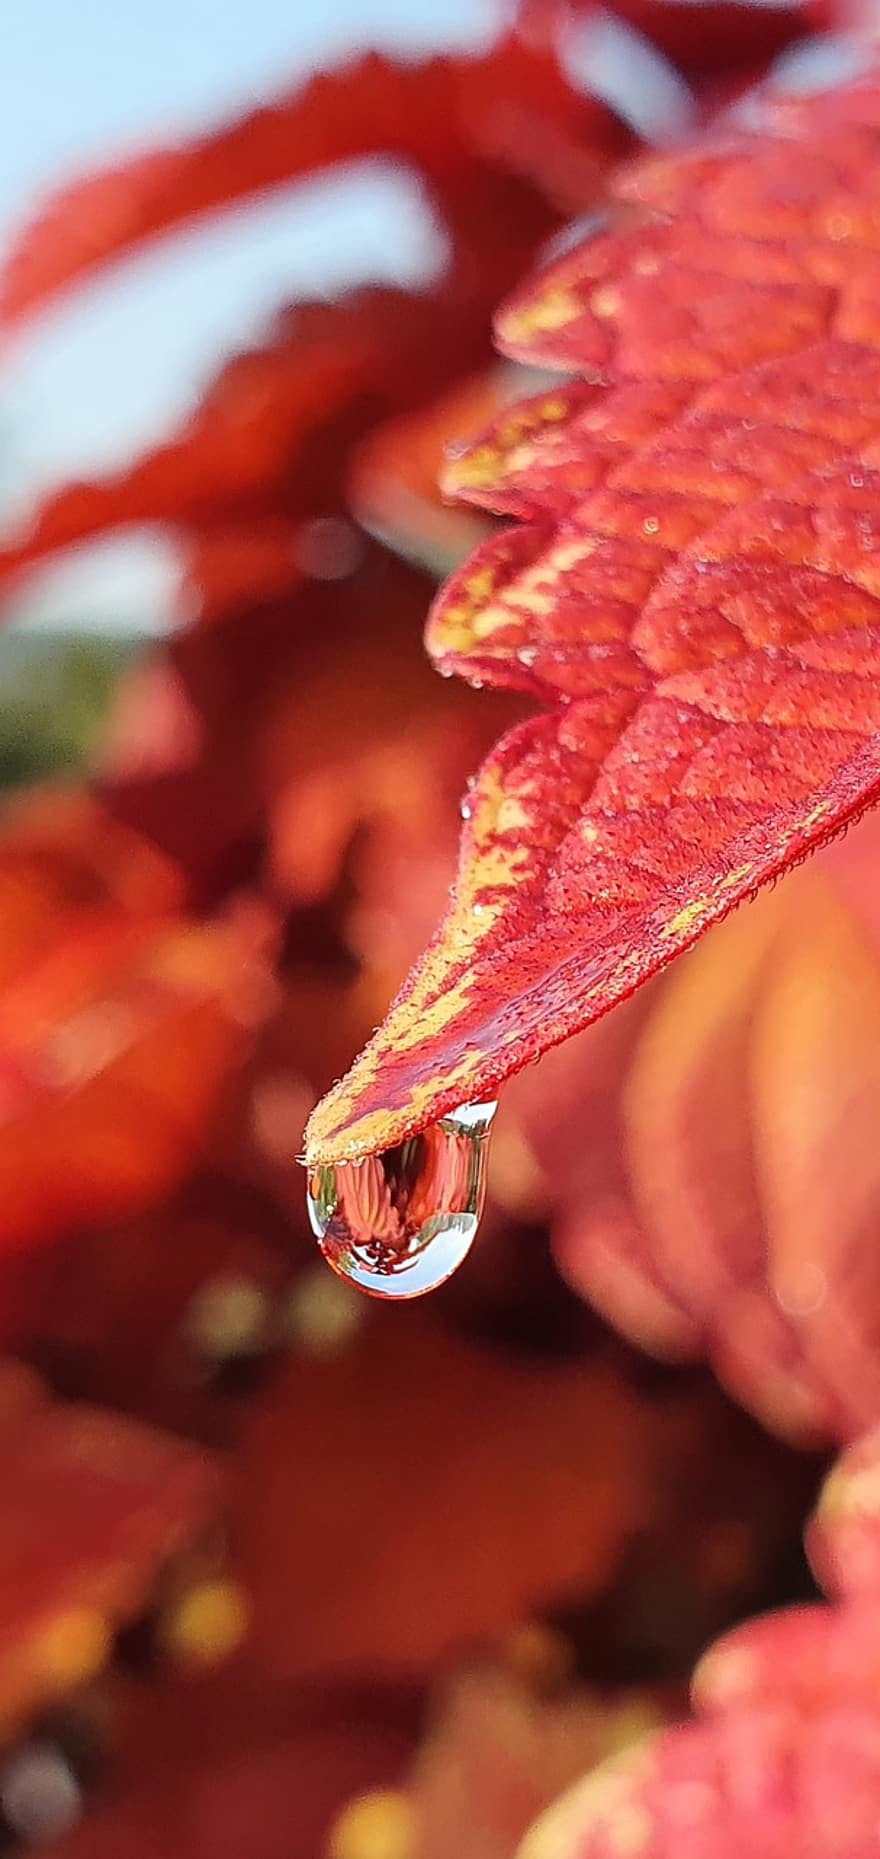 잎, 붉은 잎, 똑똑 떨어지는 물방울 소리, 물방울, 가을 잎, 가을 단풍, 식물, 닫다, 자연